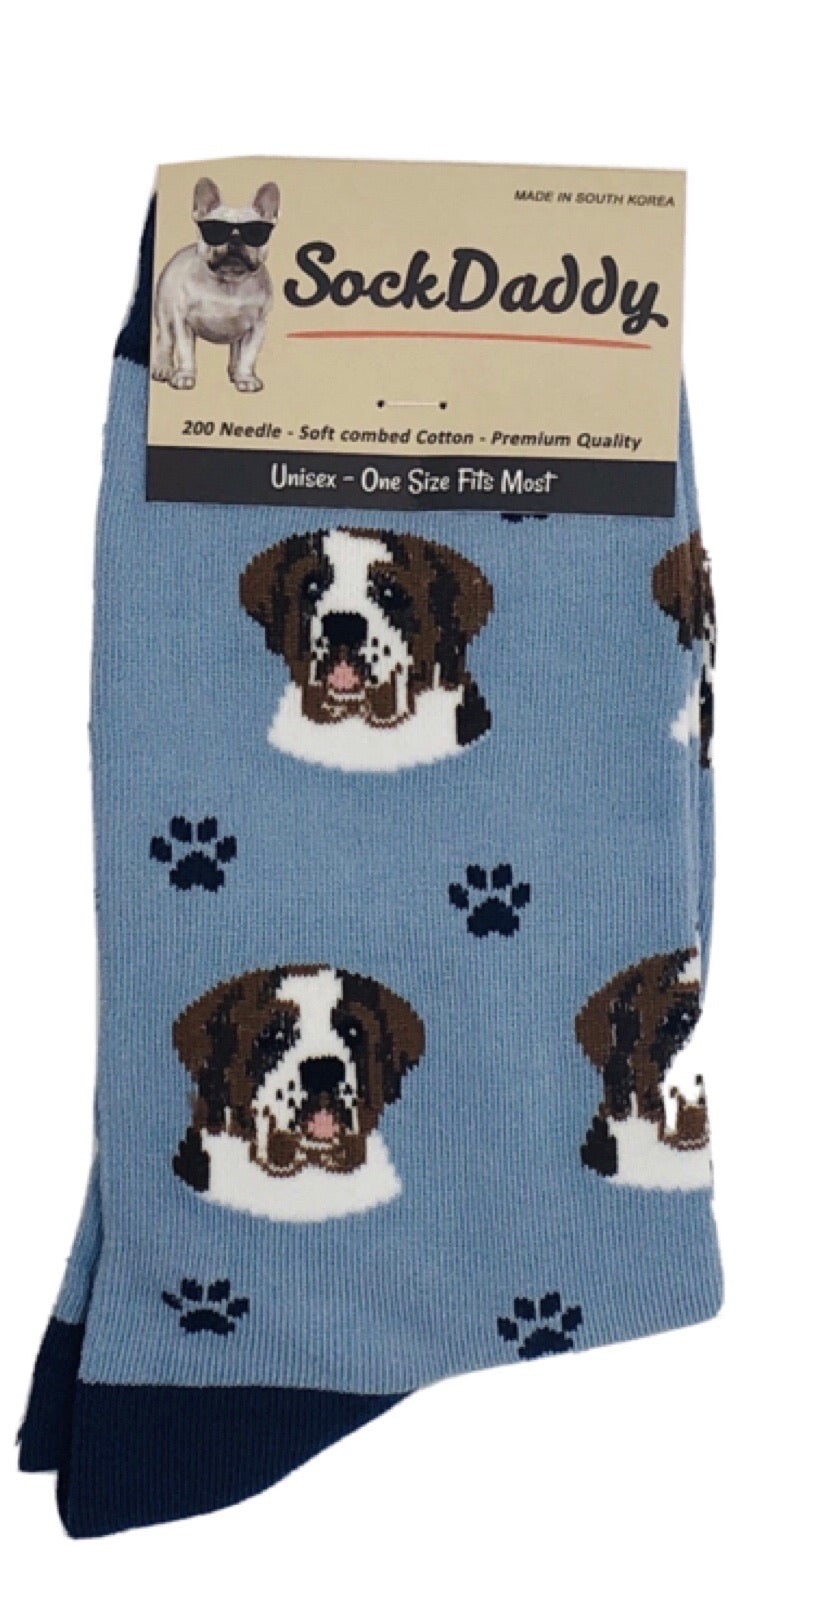 Saint Bernard Socks - Premium Socks from Sock Daddy - Just $9.95! Shop now at Pat's Monograms